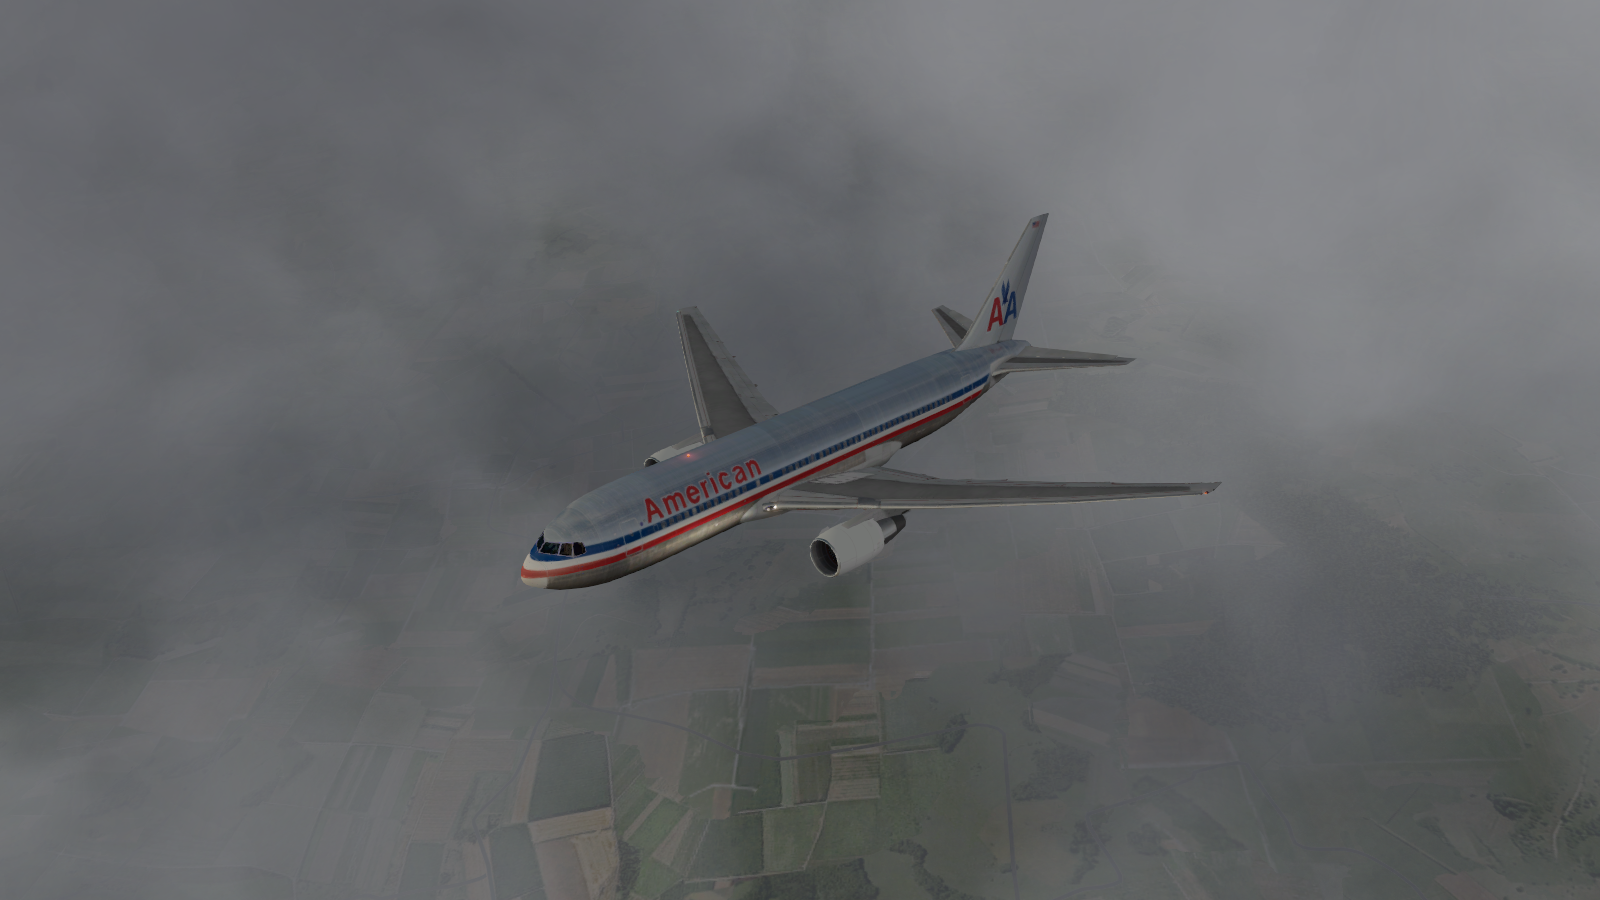 767-200 in the sky 2